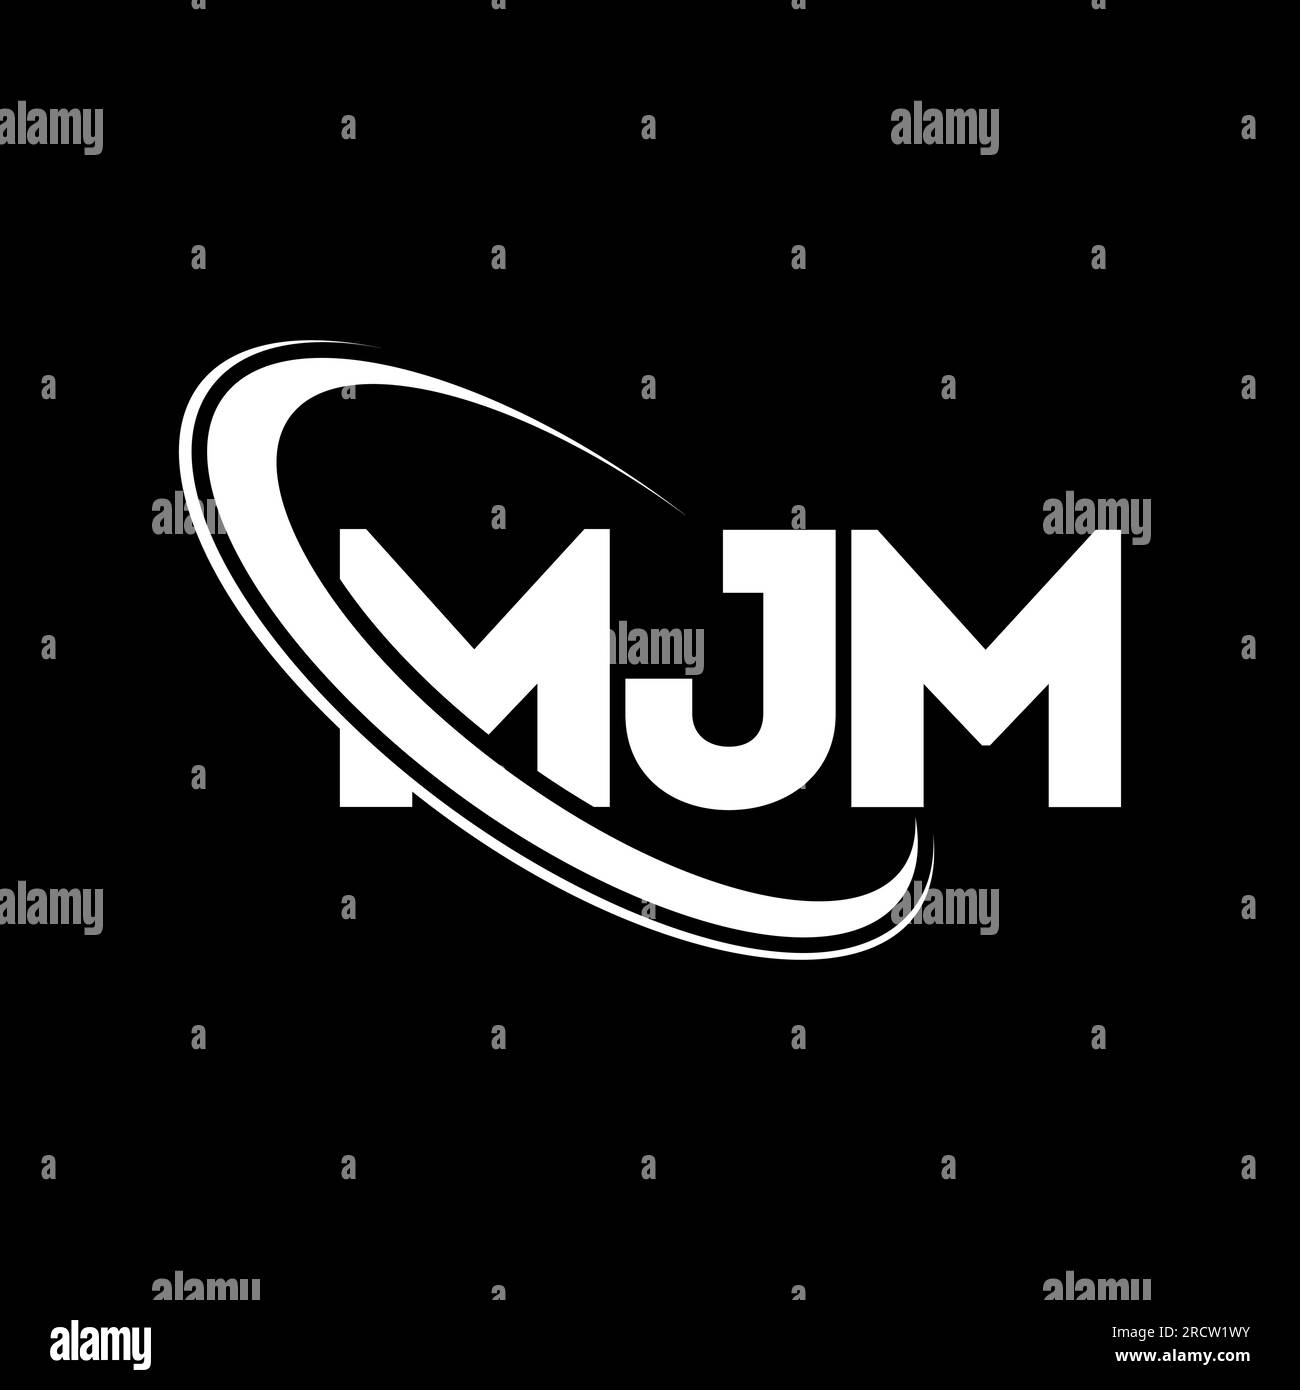 MJM-Logo. MJM-Brief. Logo mit MJM-Buchstaben. Initialen MJM-Logo, verbunden mit einem Kreis und einem Monogramm-Logo in Großbuchstaben. MJM-Typografie für Technologie, Unternehmen Stock Vektor